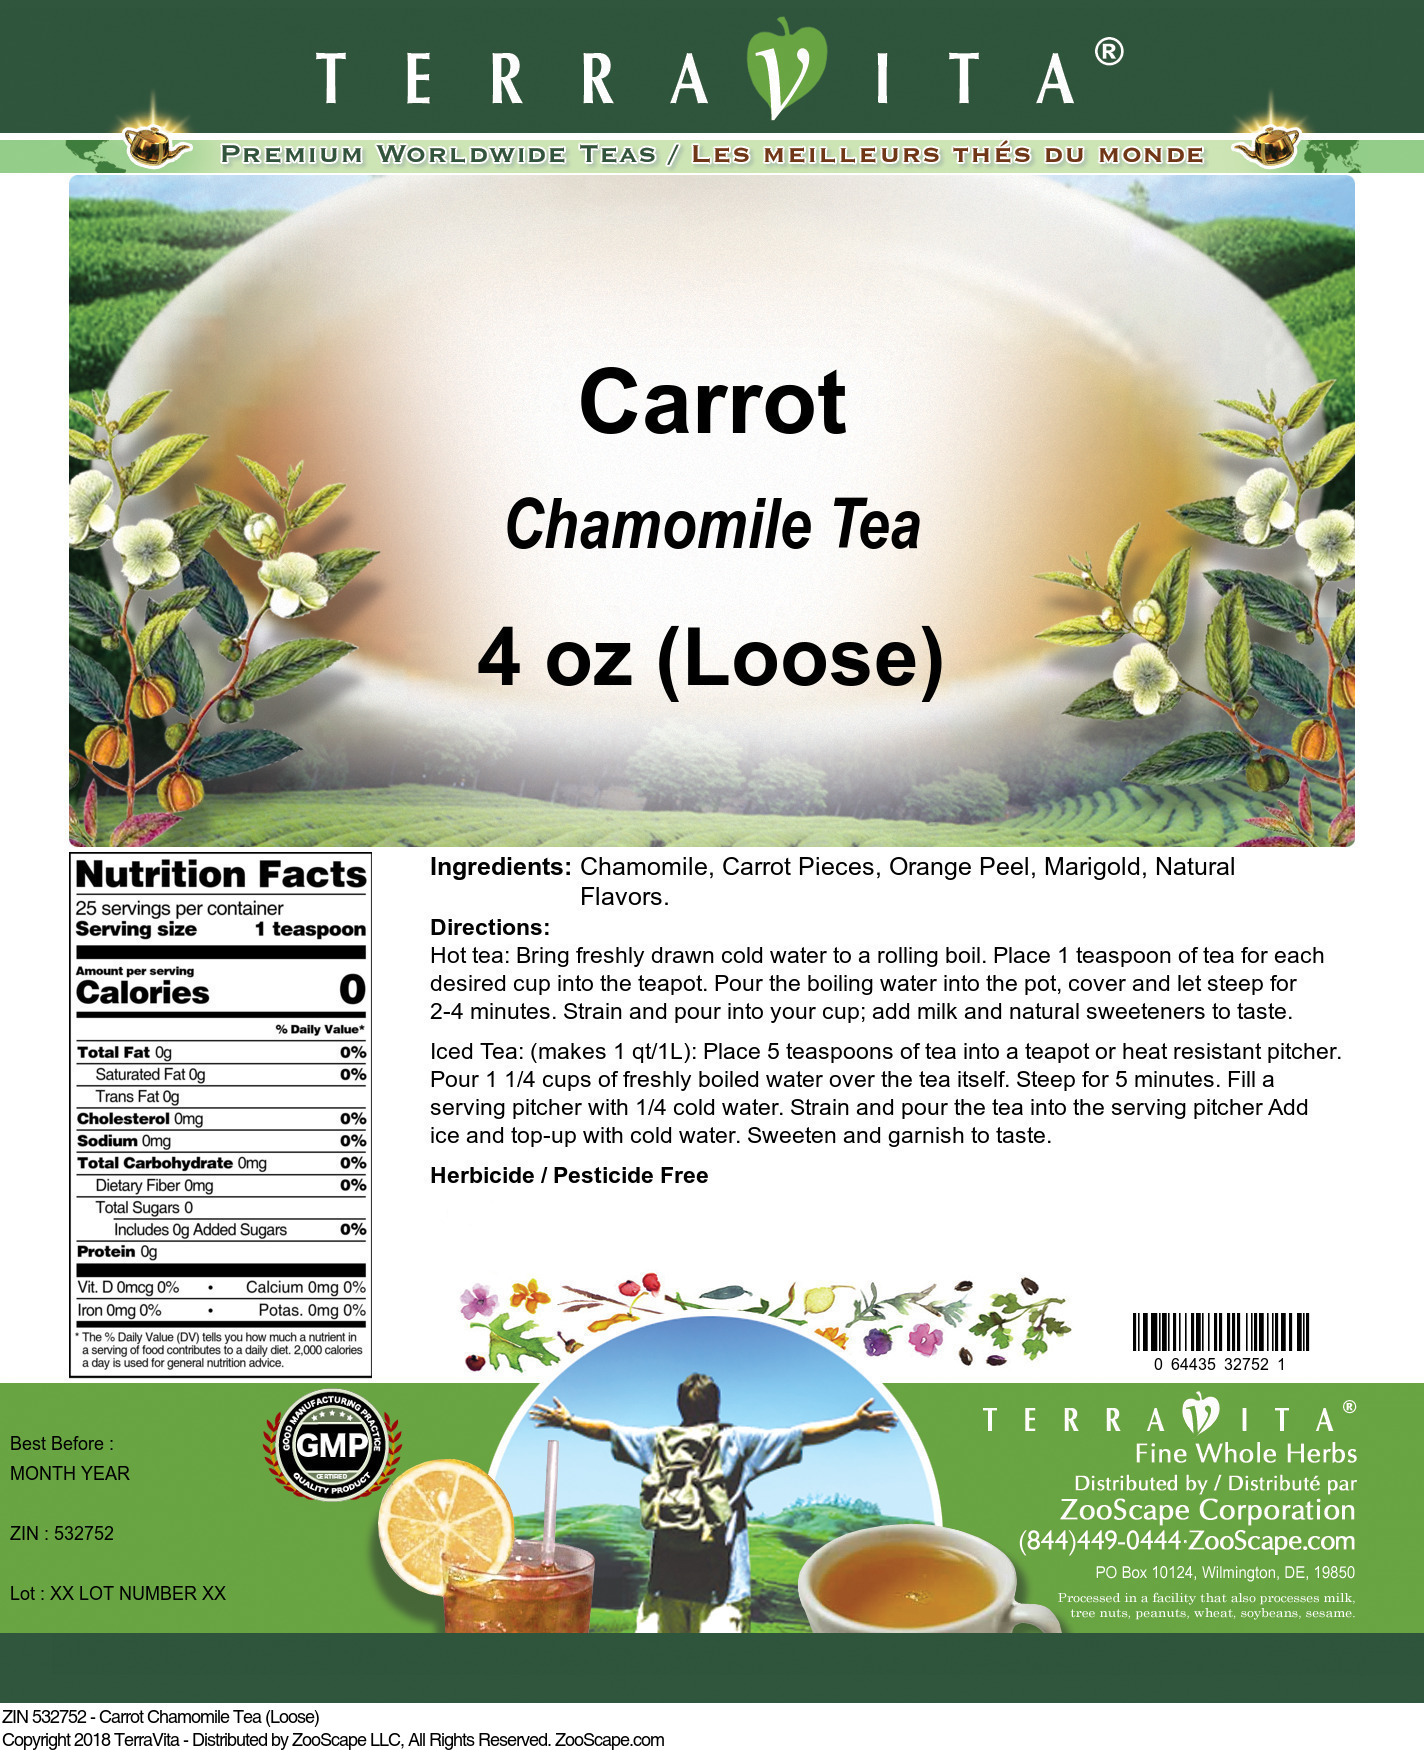 Carrot Chamomile Tea (Loose) - Label